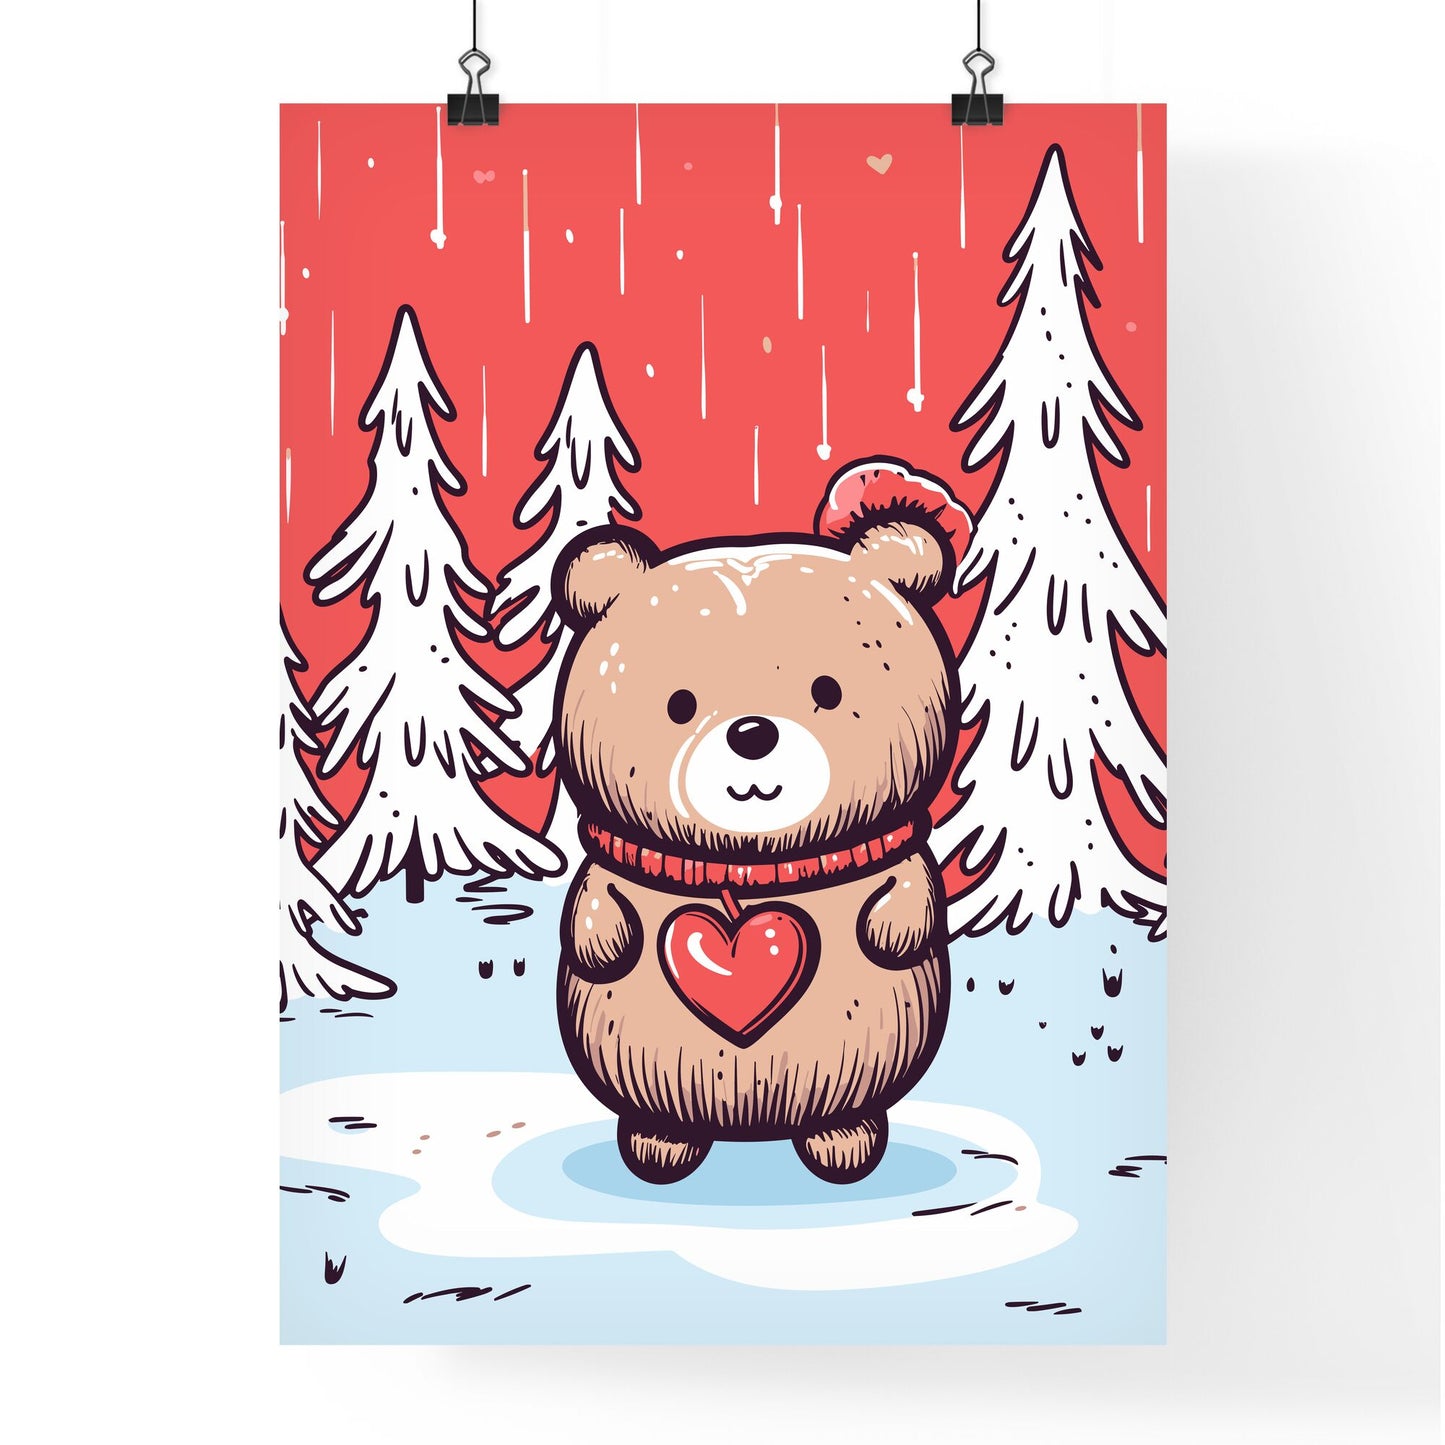 Merry Christmas Card With A Cute Bear Huging A Heart - A Cartoon Of A Teddy Bear Holding A Heart Default Title